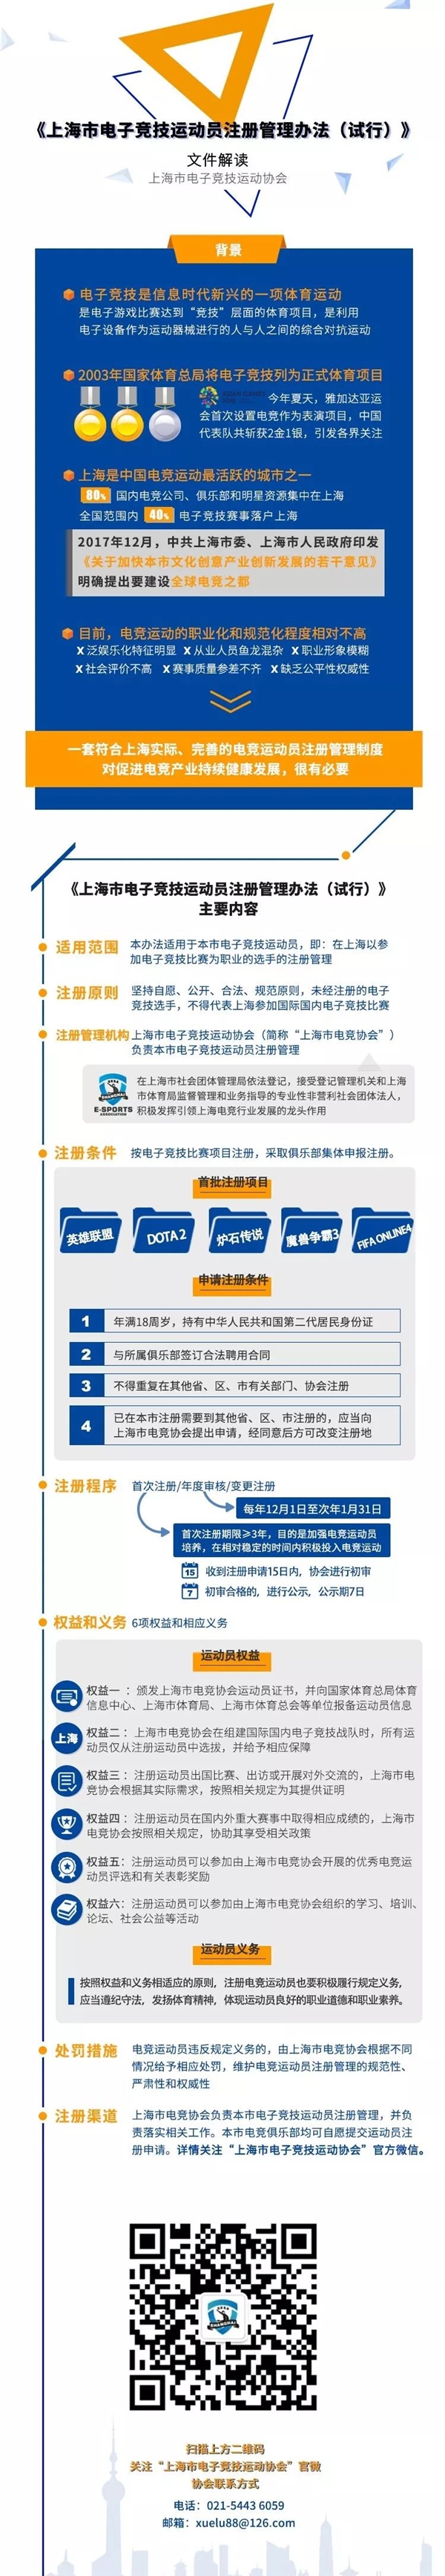 上海率先实施电竞运动员注册制 首批含LOL、魔兽等